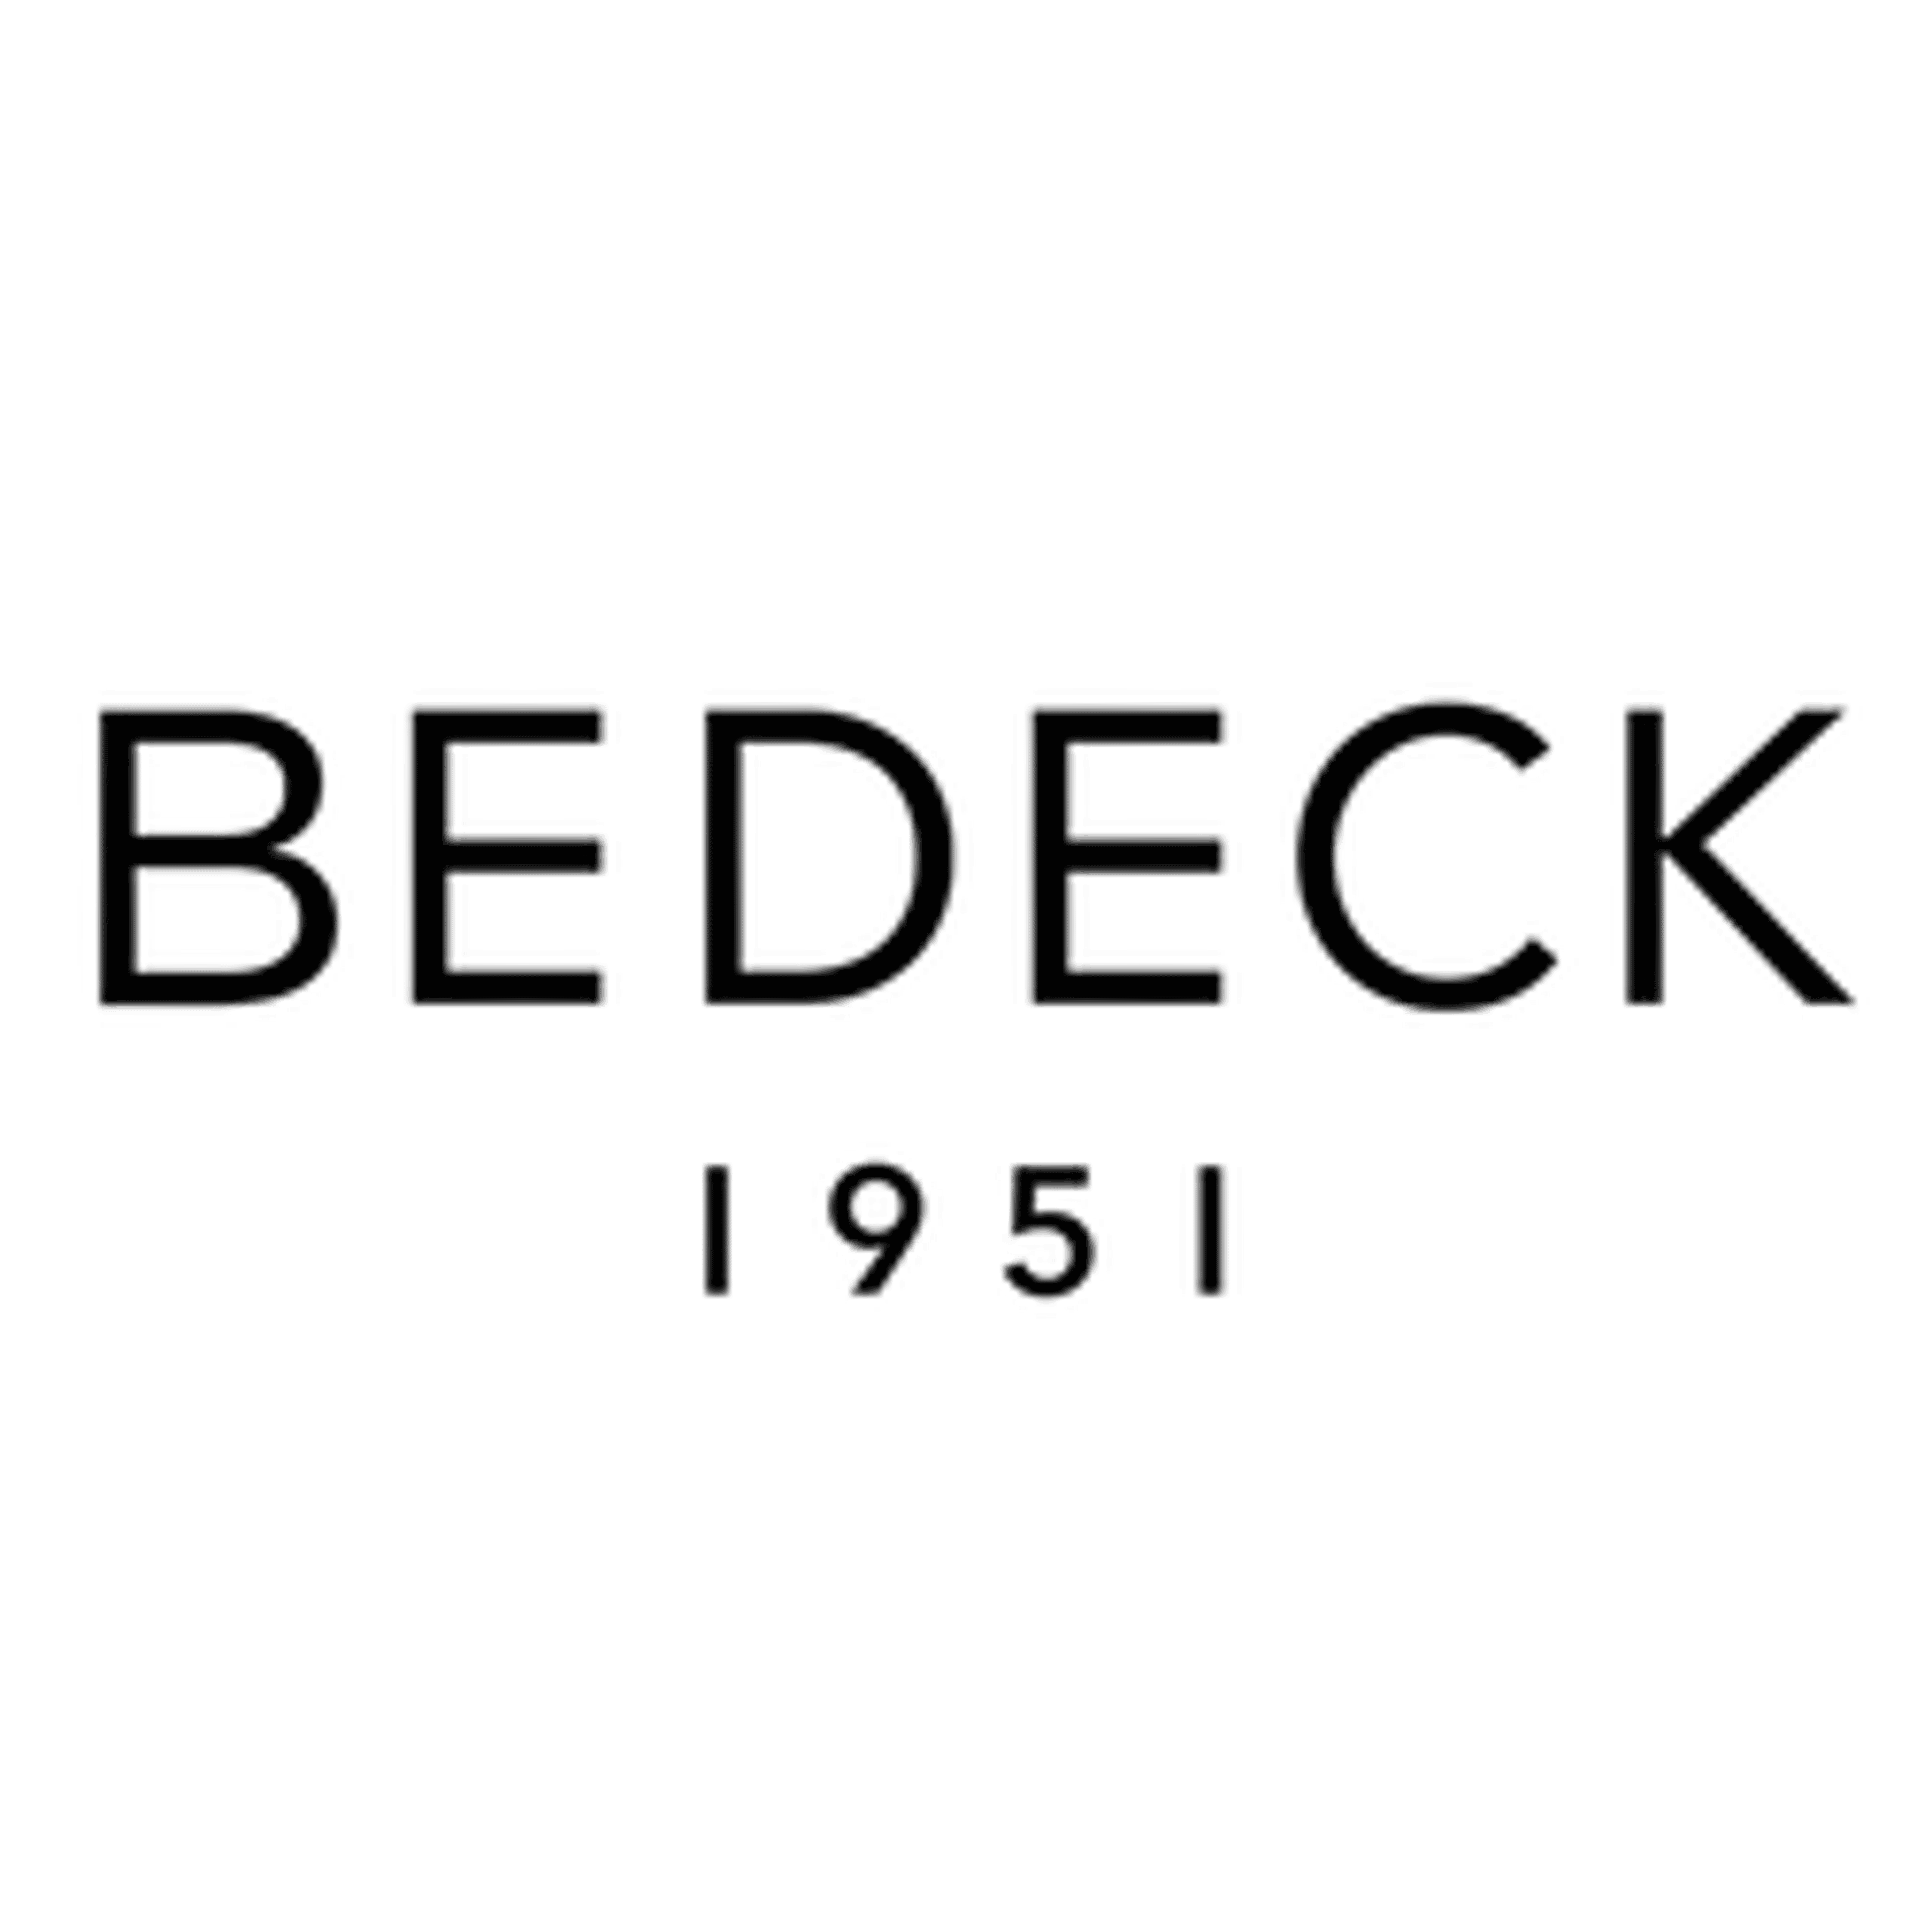  Bedeck 